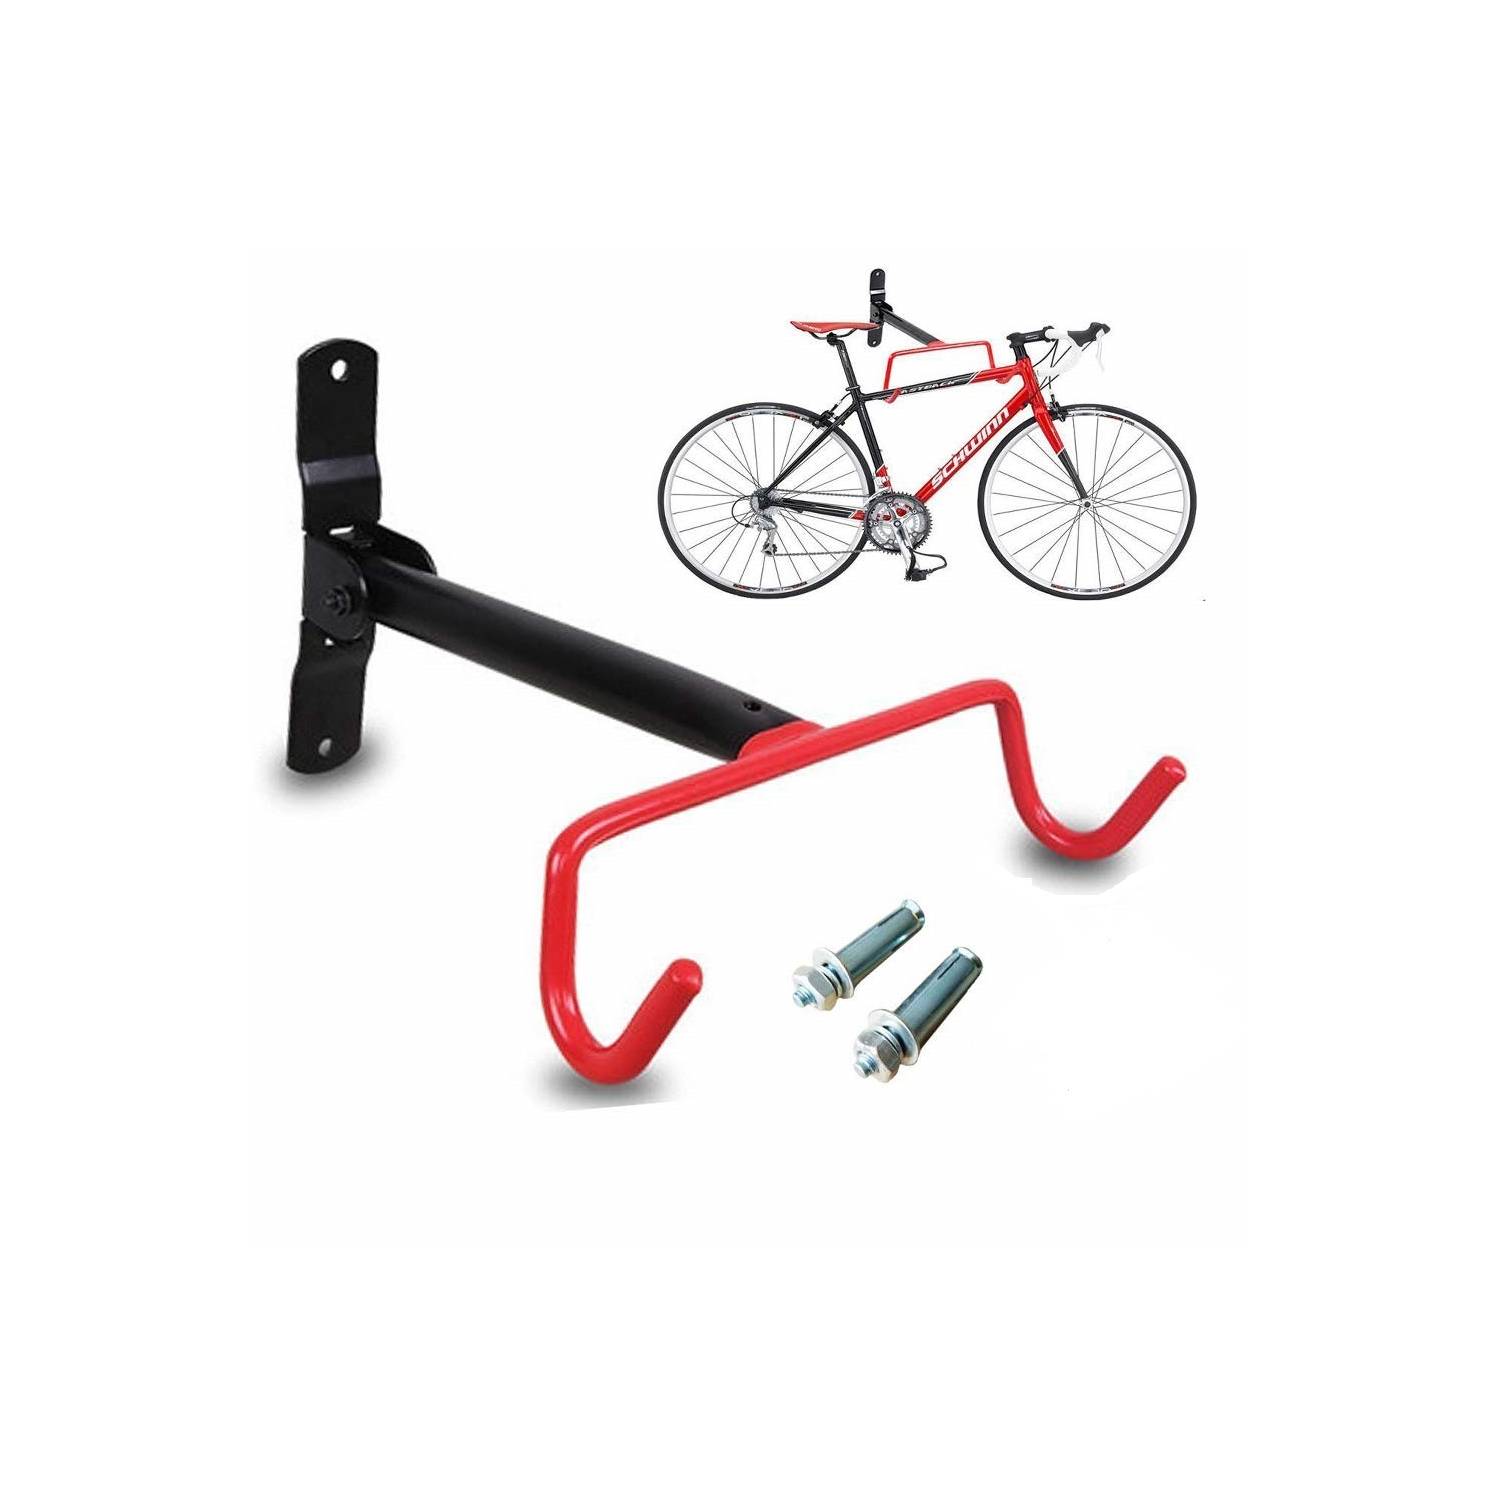 Portabicicletas pared BCN-Rack, El mejor soporte pared bicicletas